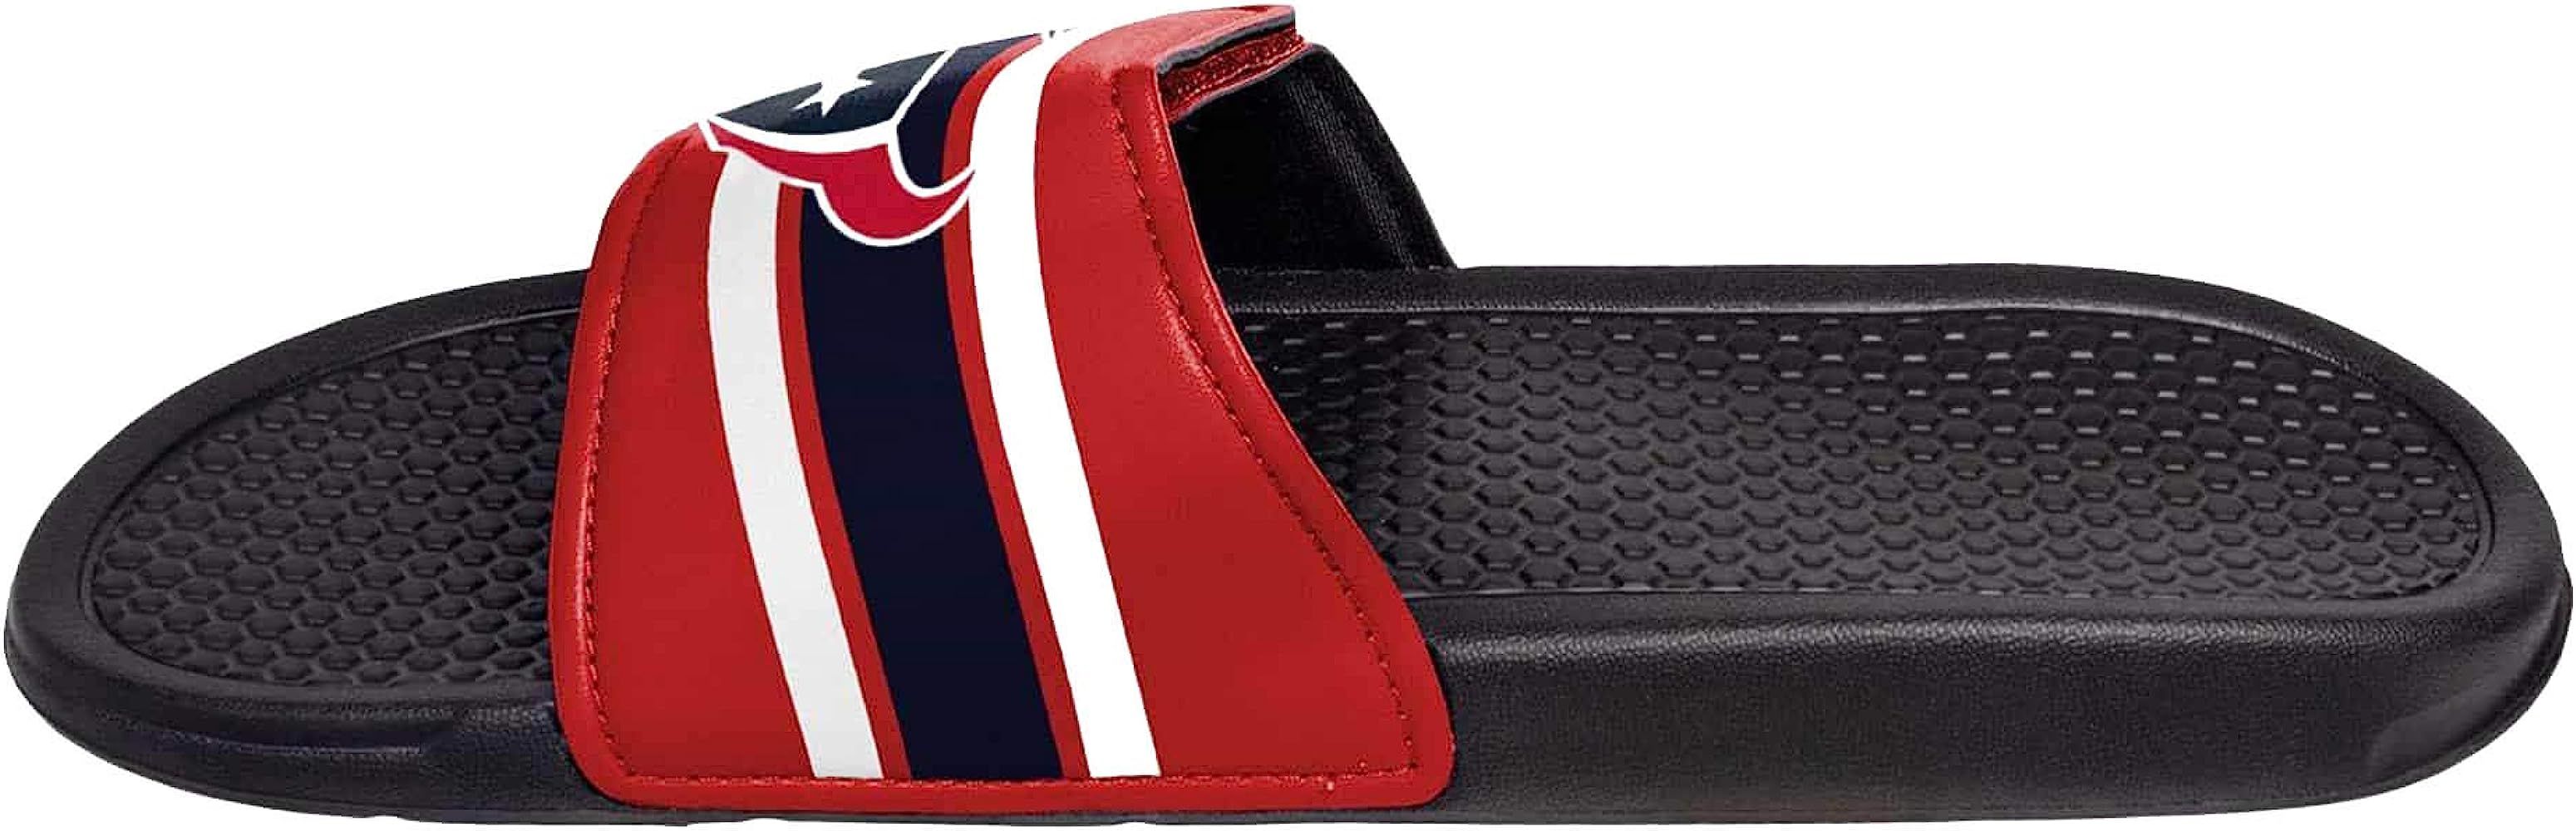 FOCO NFL Mens Cropped Big Logo Shower Sport Flip Flops Sandals Slides | Amazon (US)